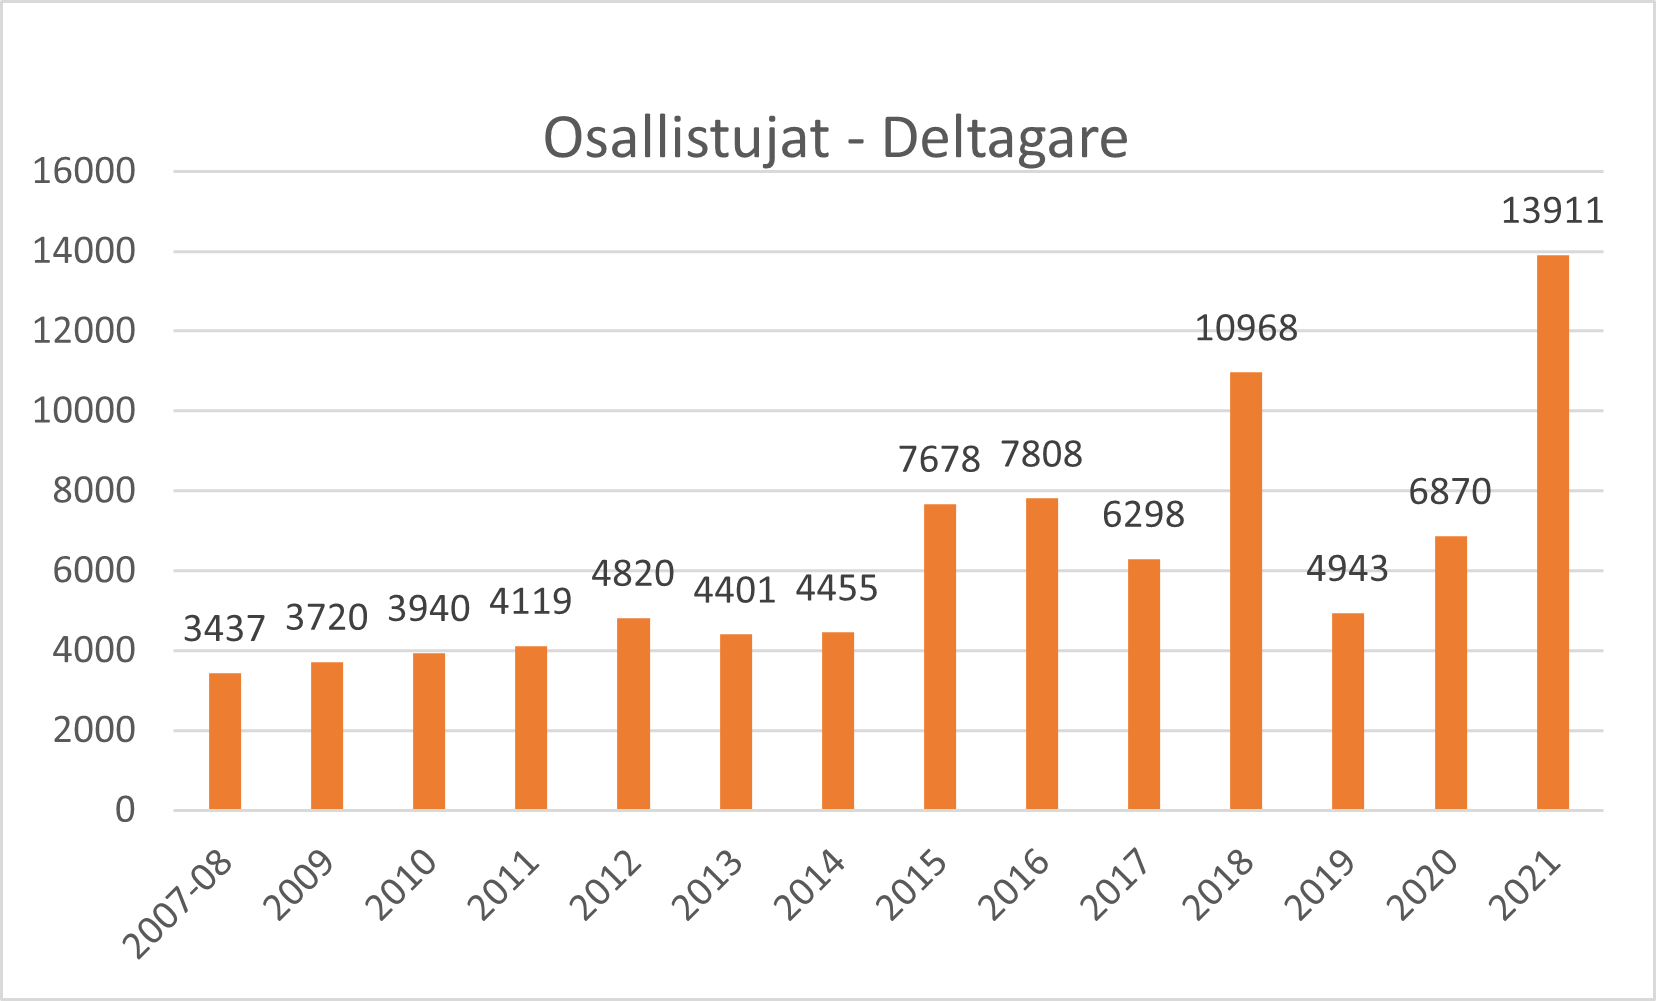 Pylväskuvio osallistujamääristä vuosilta 2007-2021